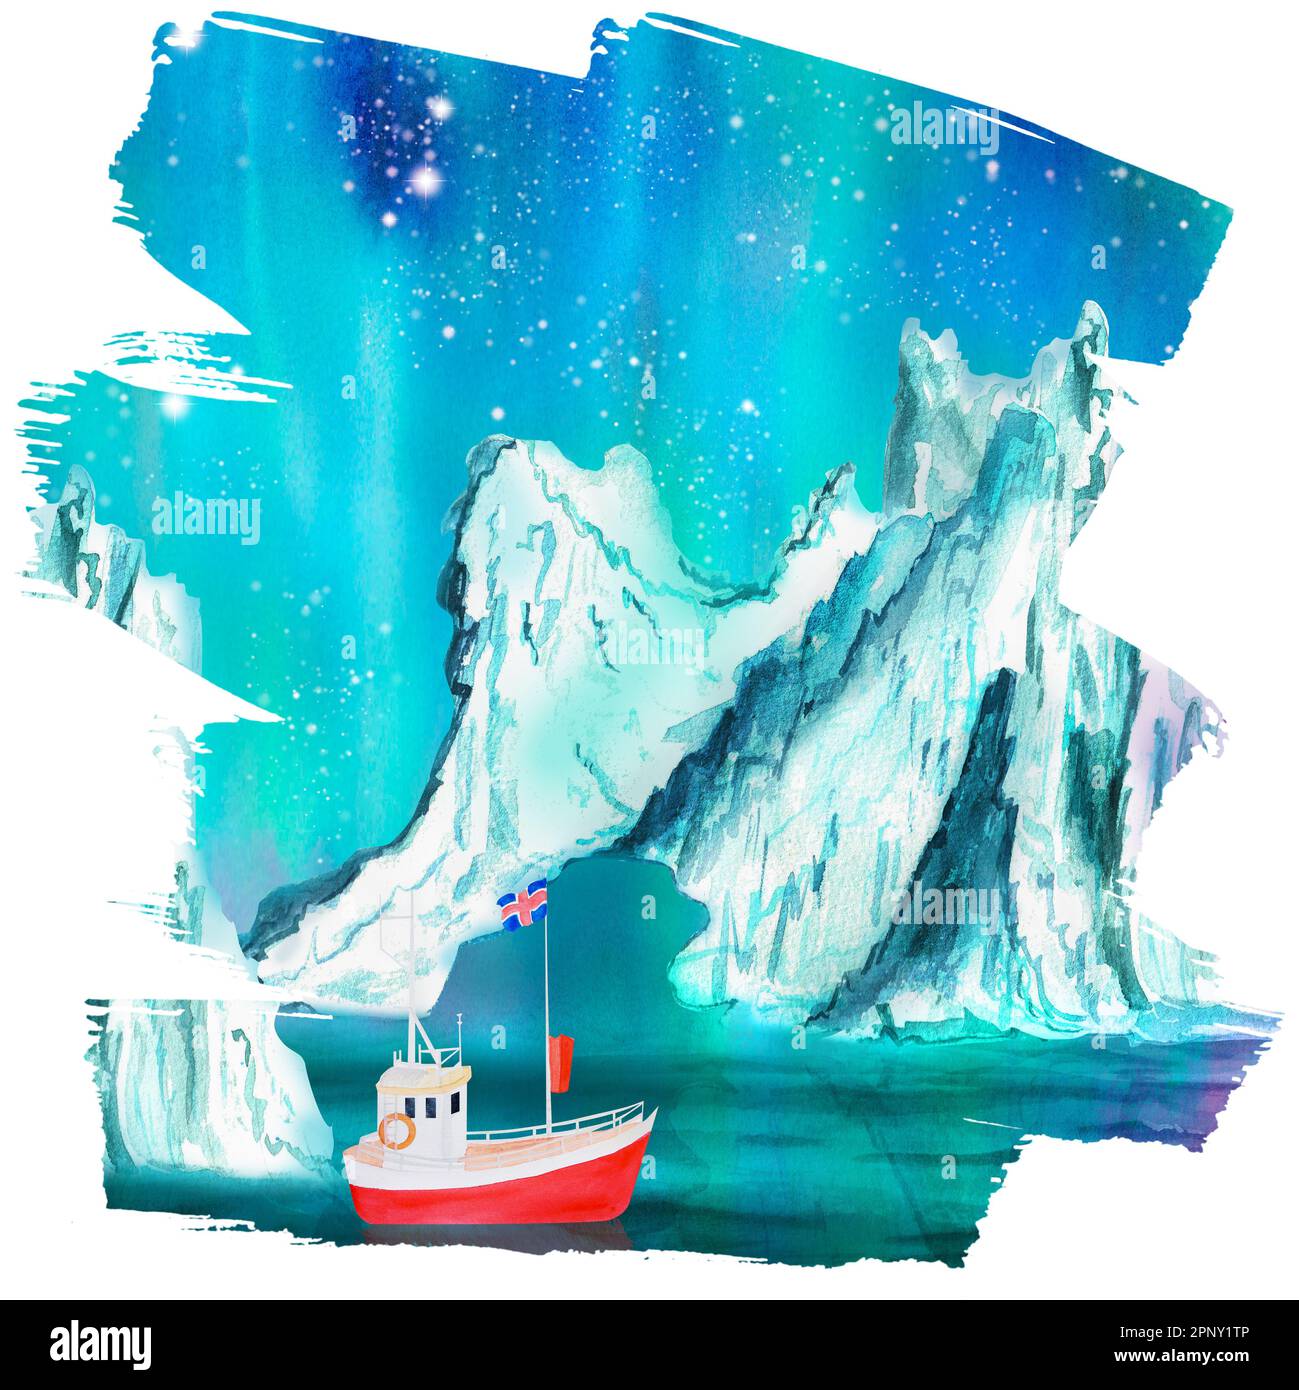 Paysage marin aquarelle dessiné à la main avec un bateau, des lumières en noir et un iceberg. Une partie de la grande série D'illustrations ISLANDAISES Banque D'Images